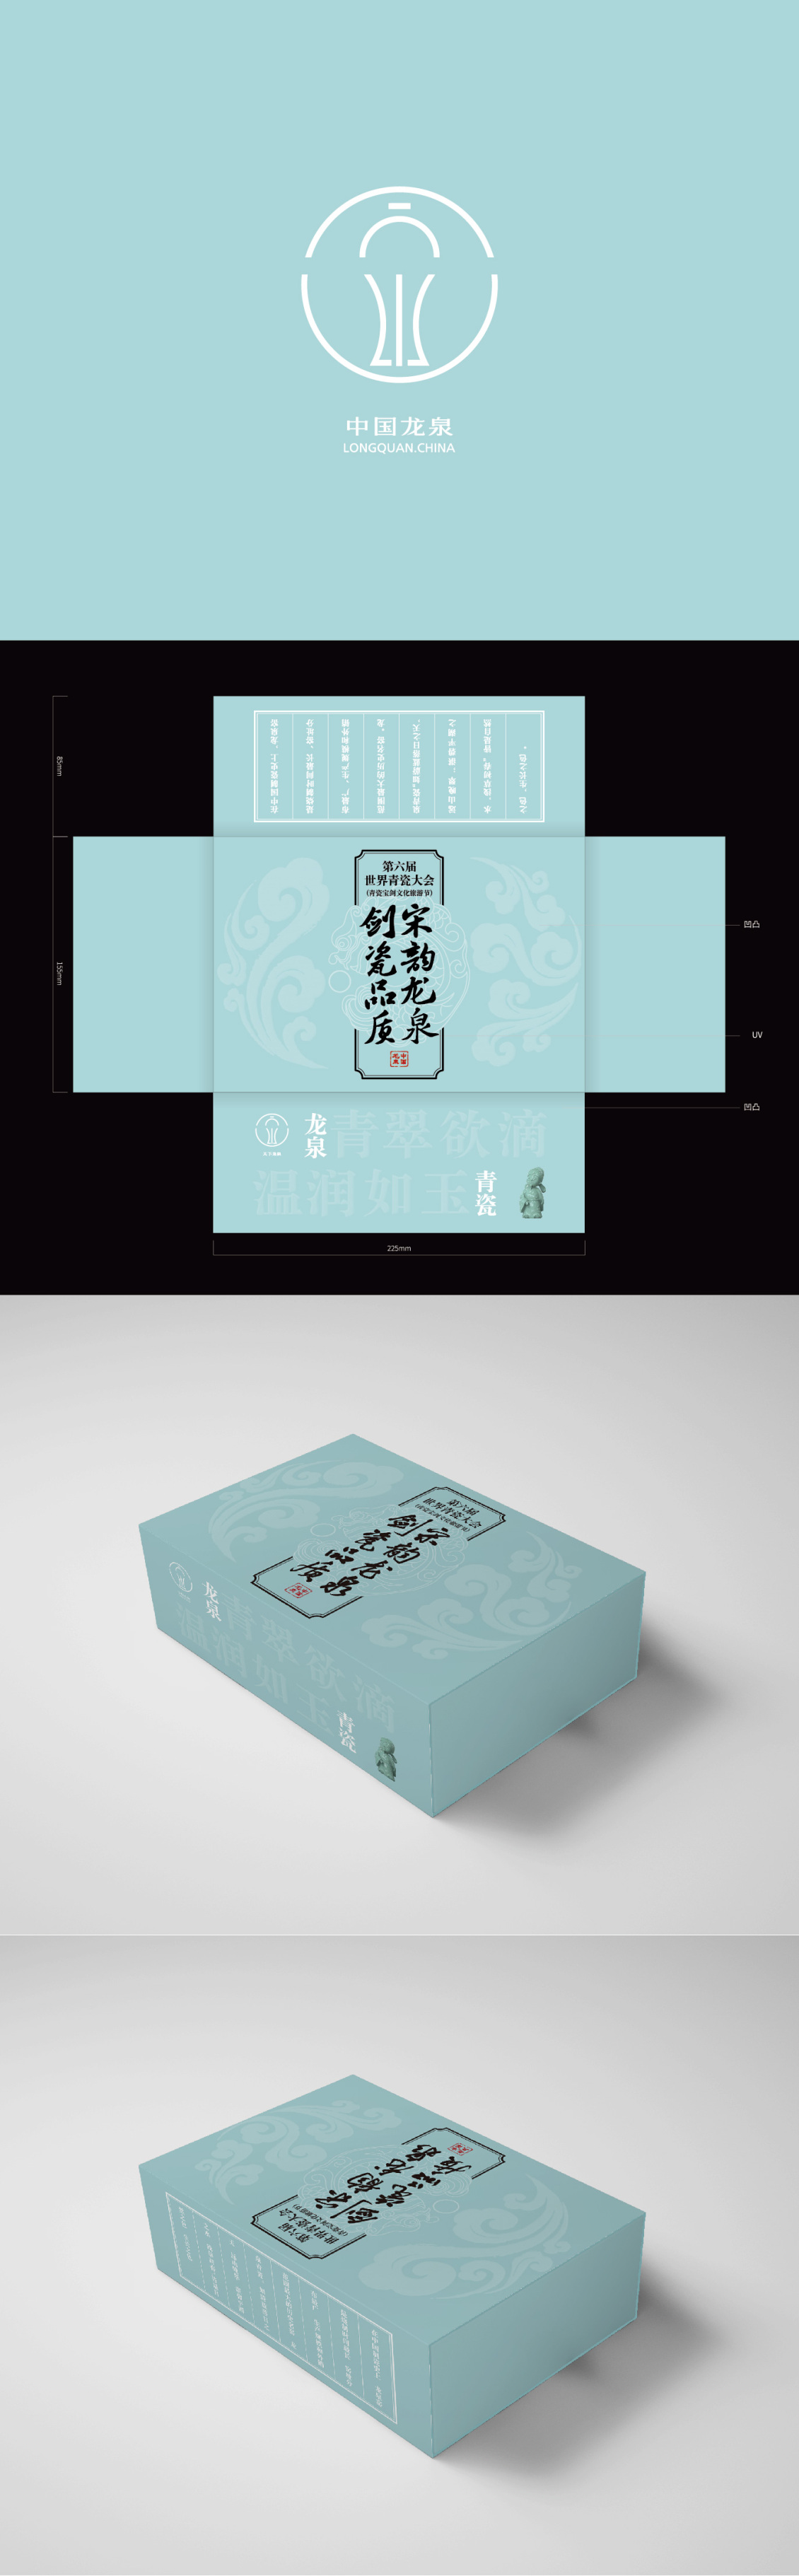 淘宝美工y232375中国龙泉礼盒包装作品